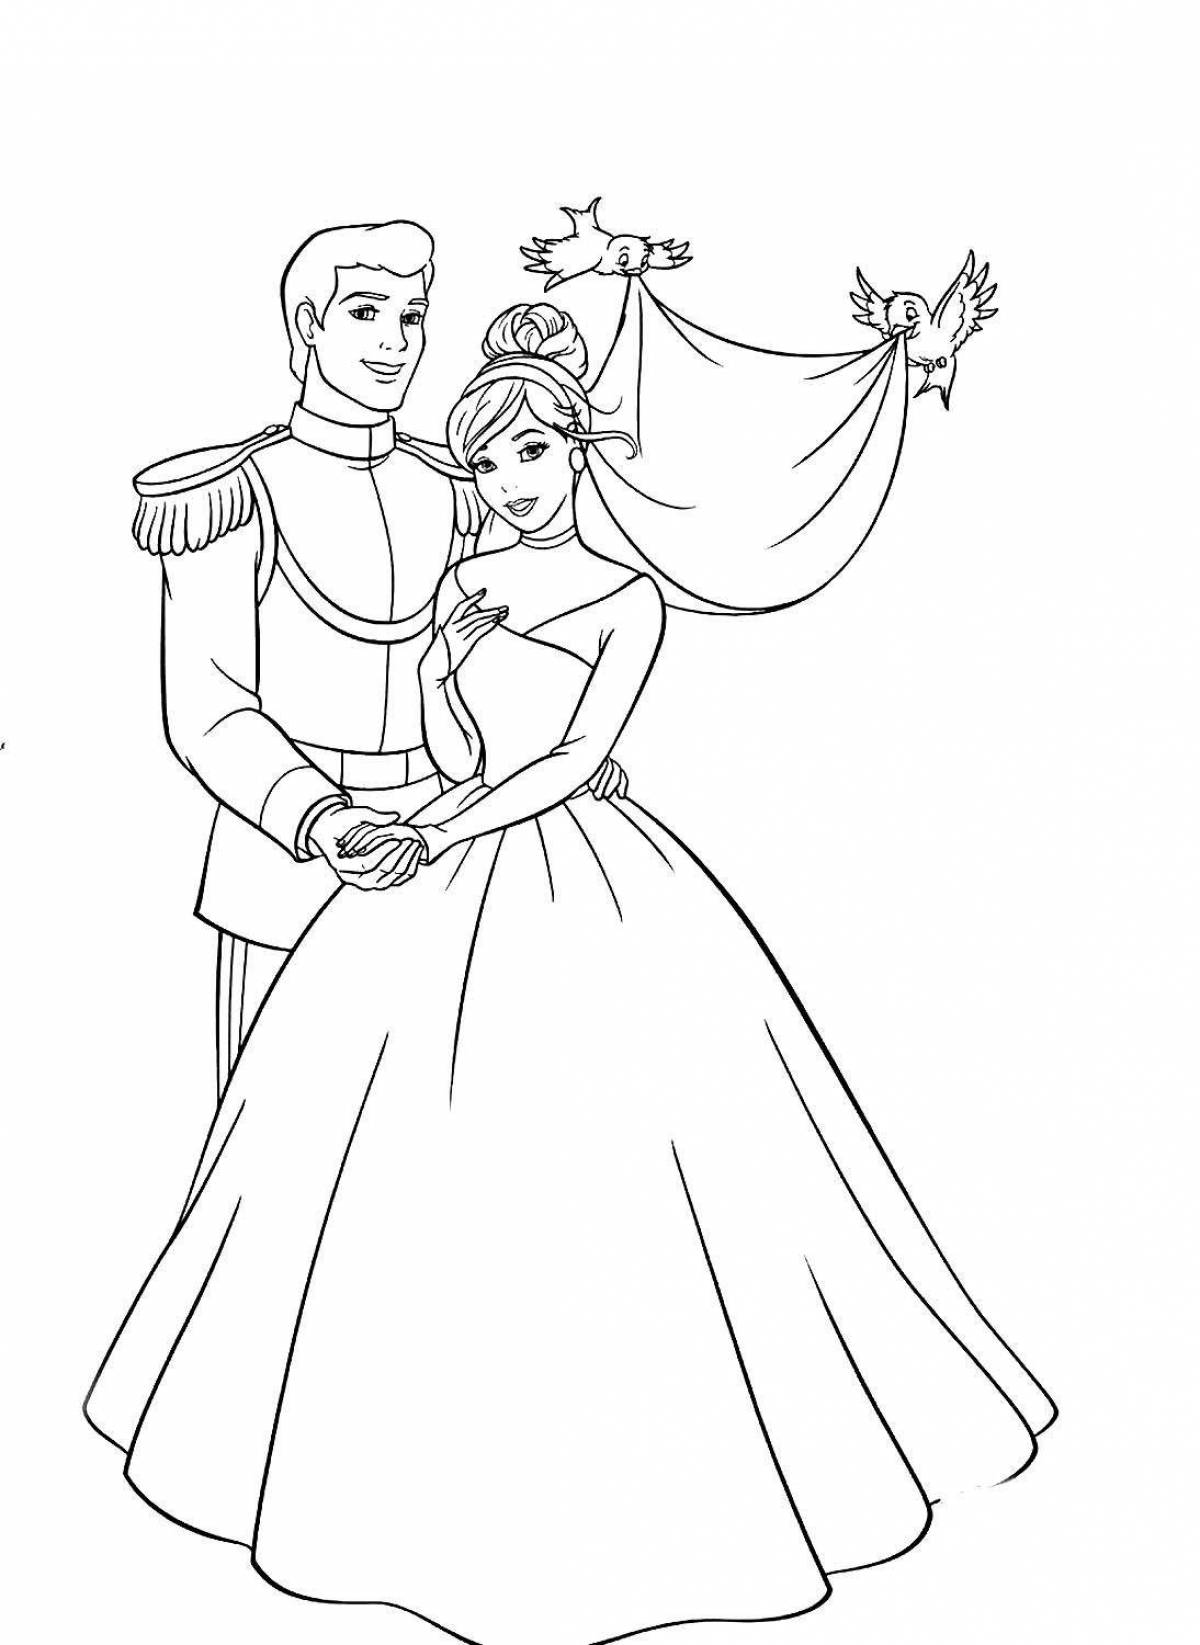 Раскраска «Принц и принцесса»